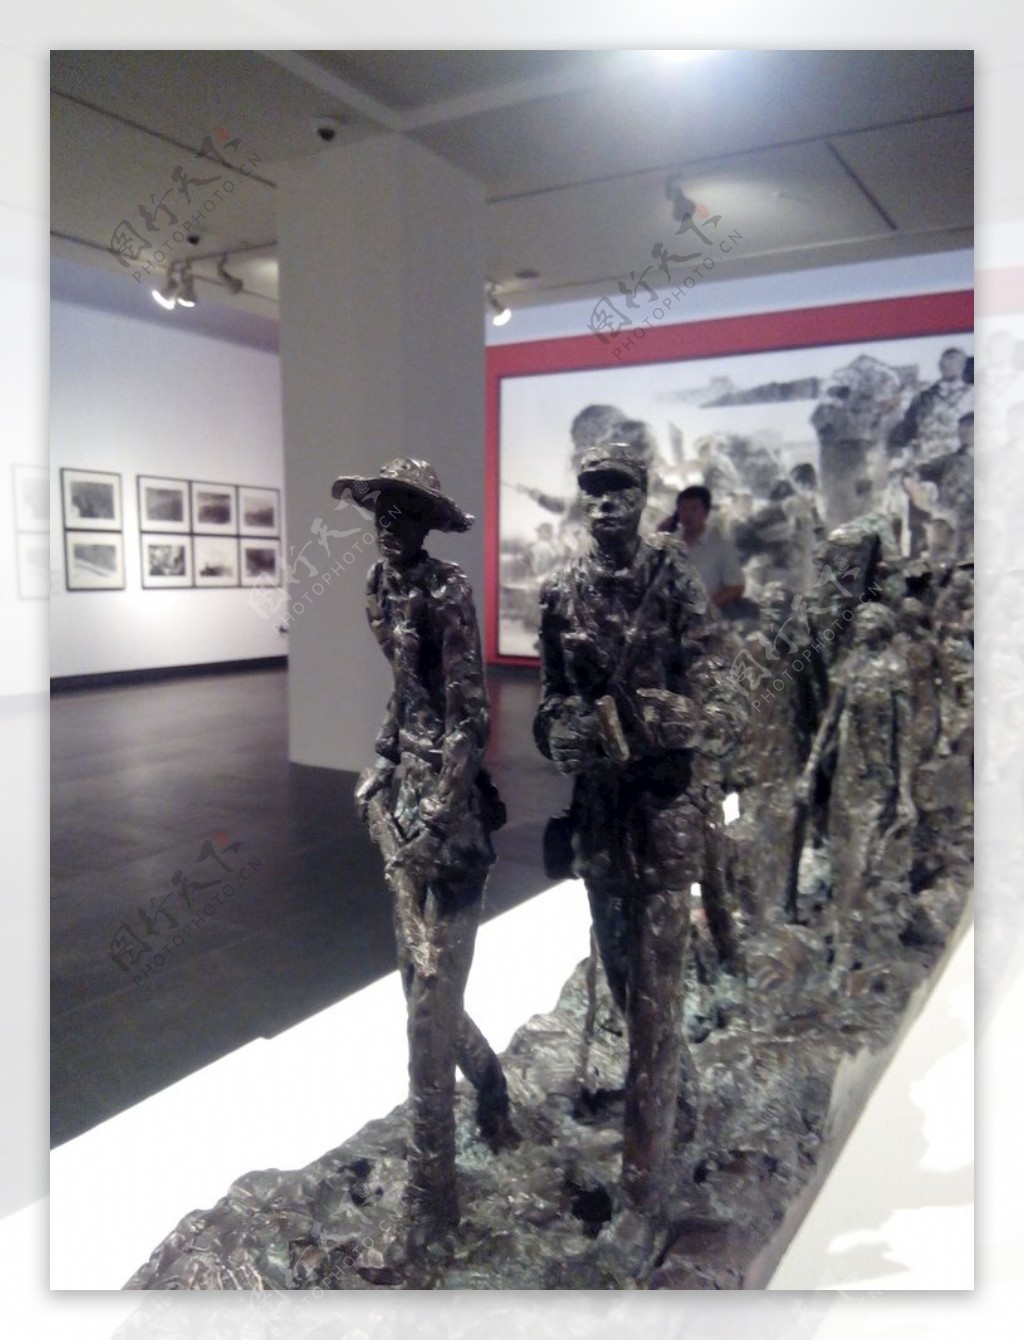 广东美术馆展览雕塑